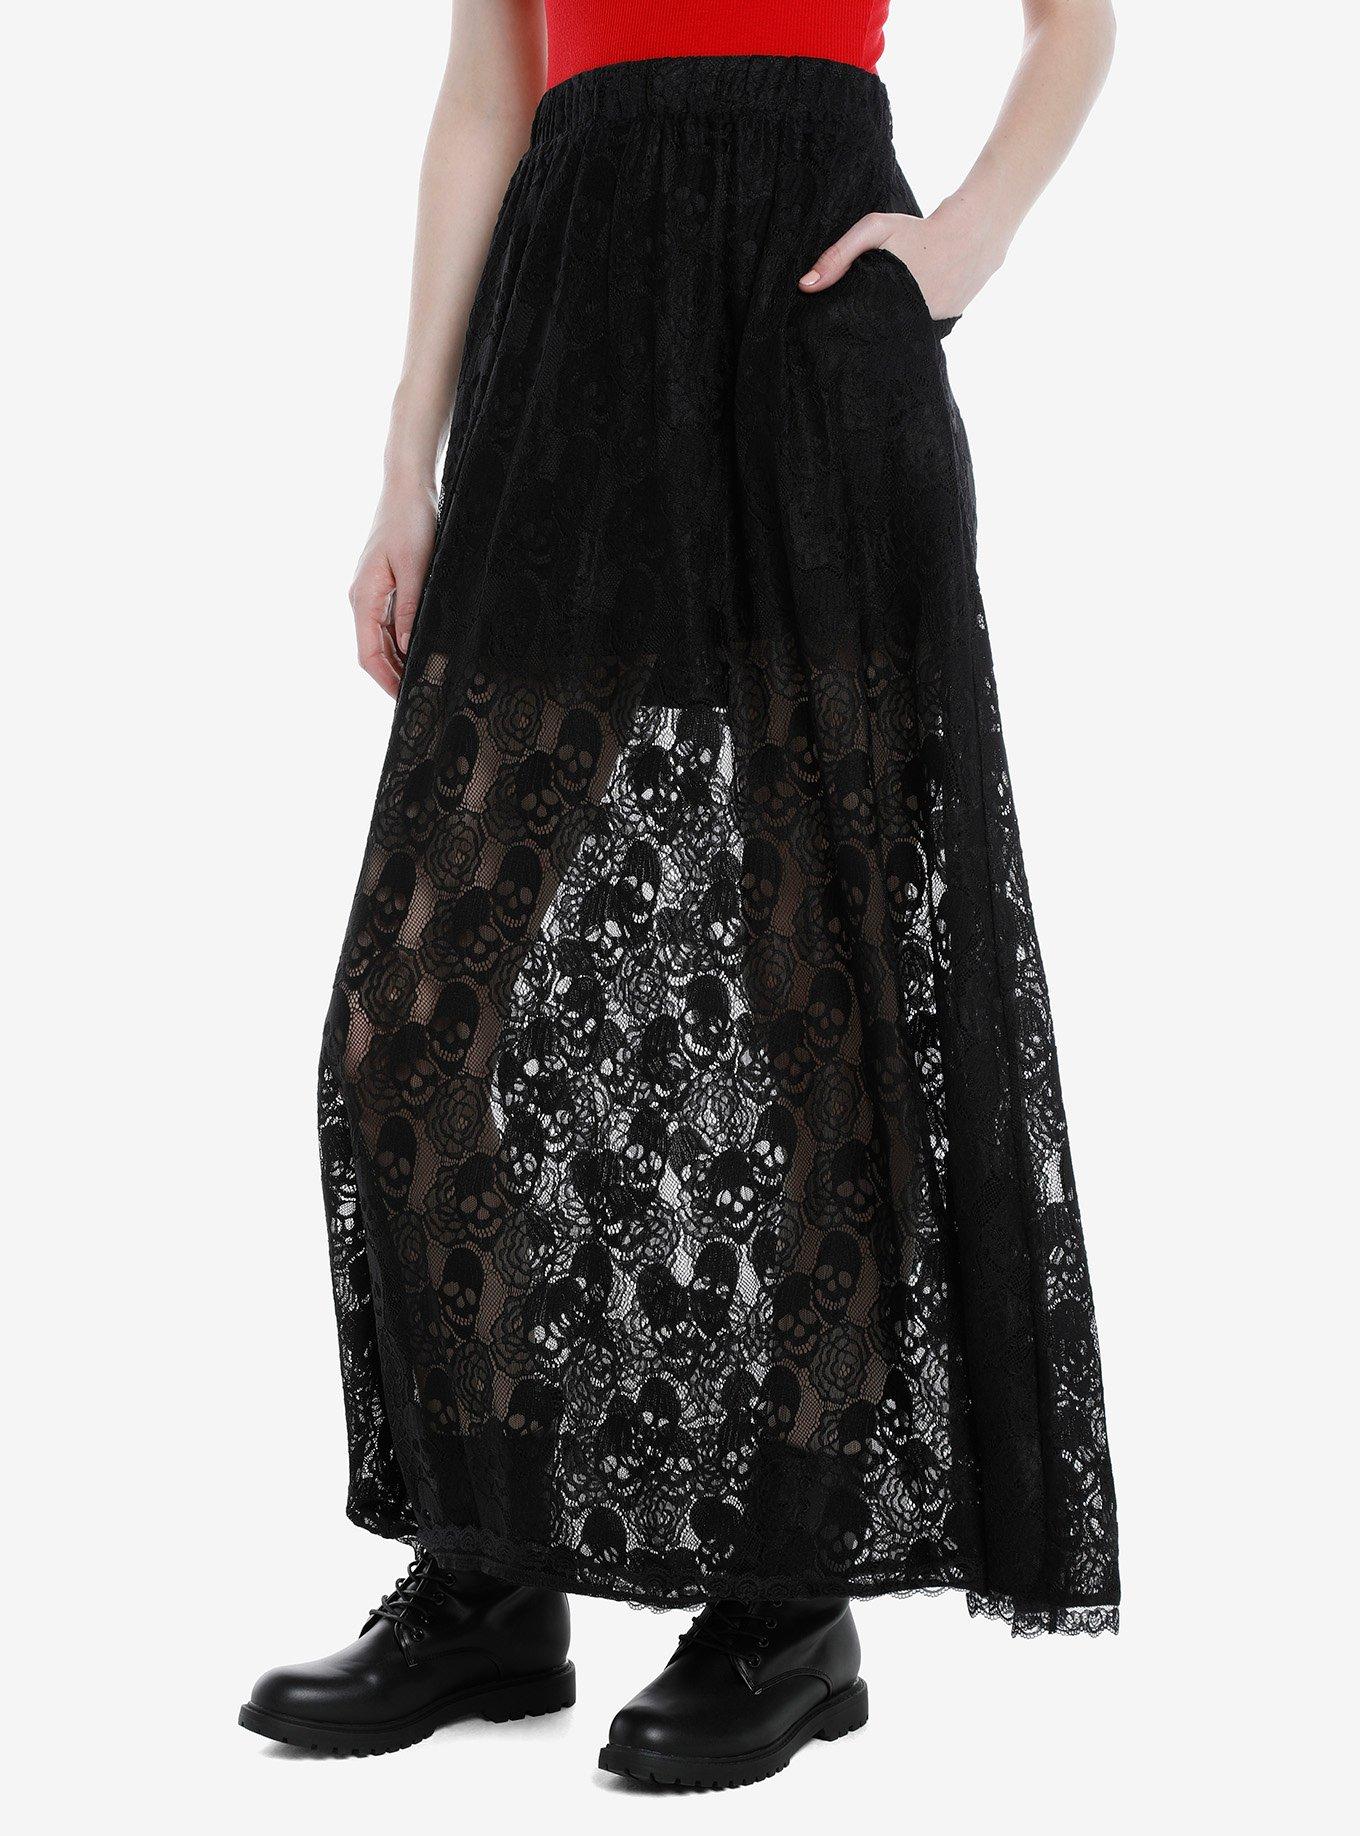 Skull & Roses Black Lace Maxi Skirt, BLACK, hi-res